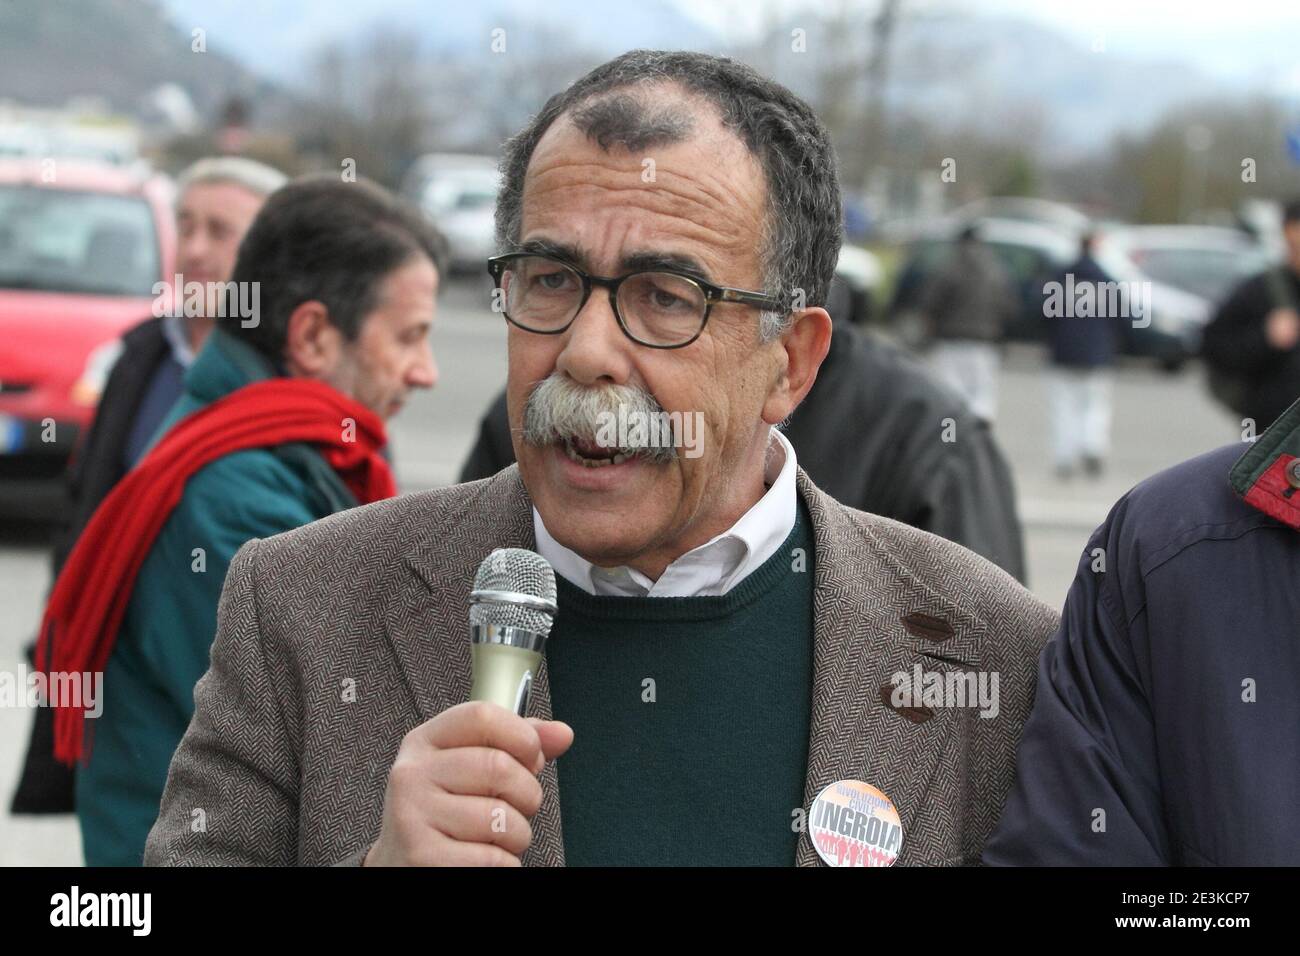 Cassino, Italia - 8 febbraio 2013: Sandro Ruotolo, candidato nella lista Rivoluzione Civile Ingroia, parla agli operai della Fiat davanti i cancelli dello stabilimento cassinate Stockfoto